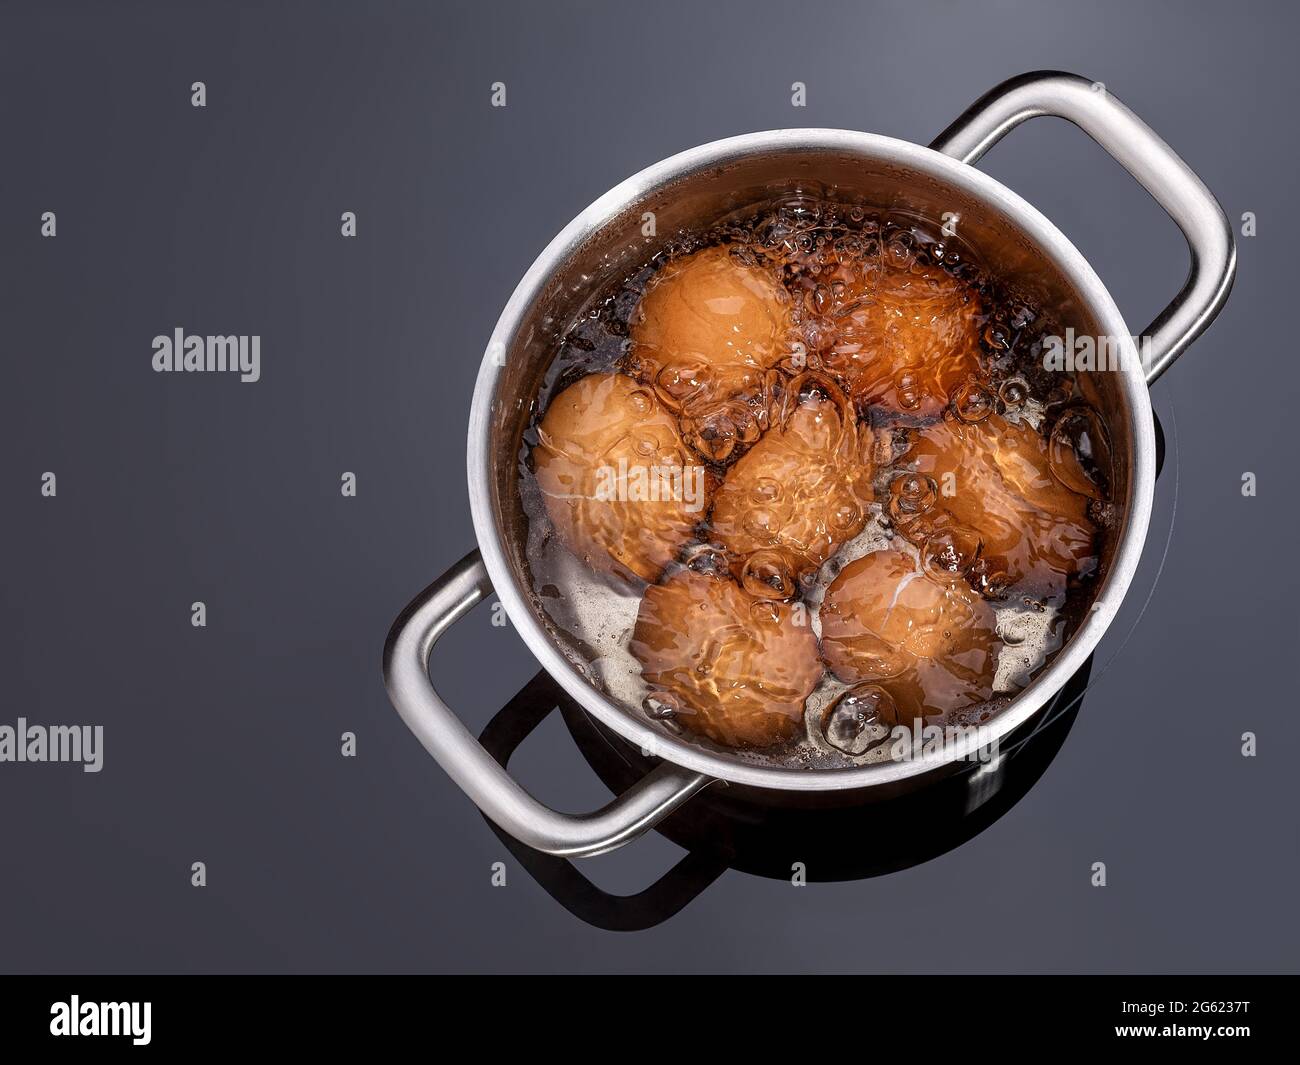 Hühnereier kochen in einem Topf auf einem Glaskeramikkochfeld. Kochen hart gekochte  Eier in einer Metallpfanne auf einem Elektroherd. Eier in einem Topf  anbraten Stockfotografie - Alamy